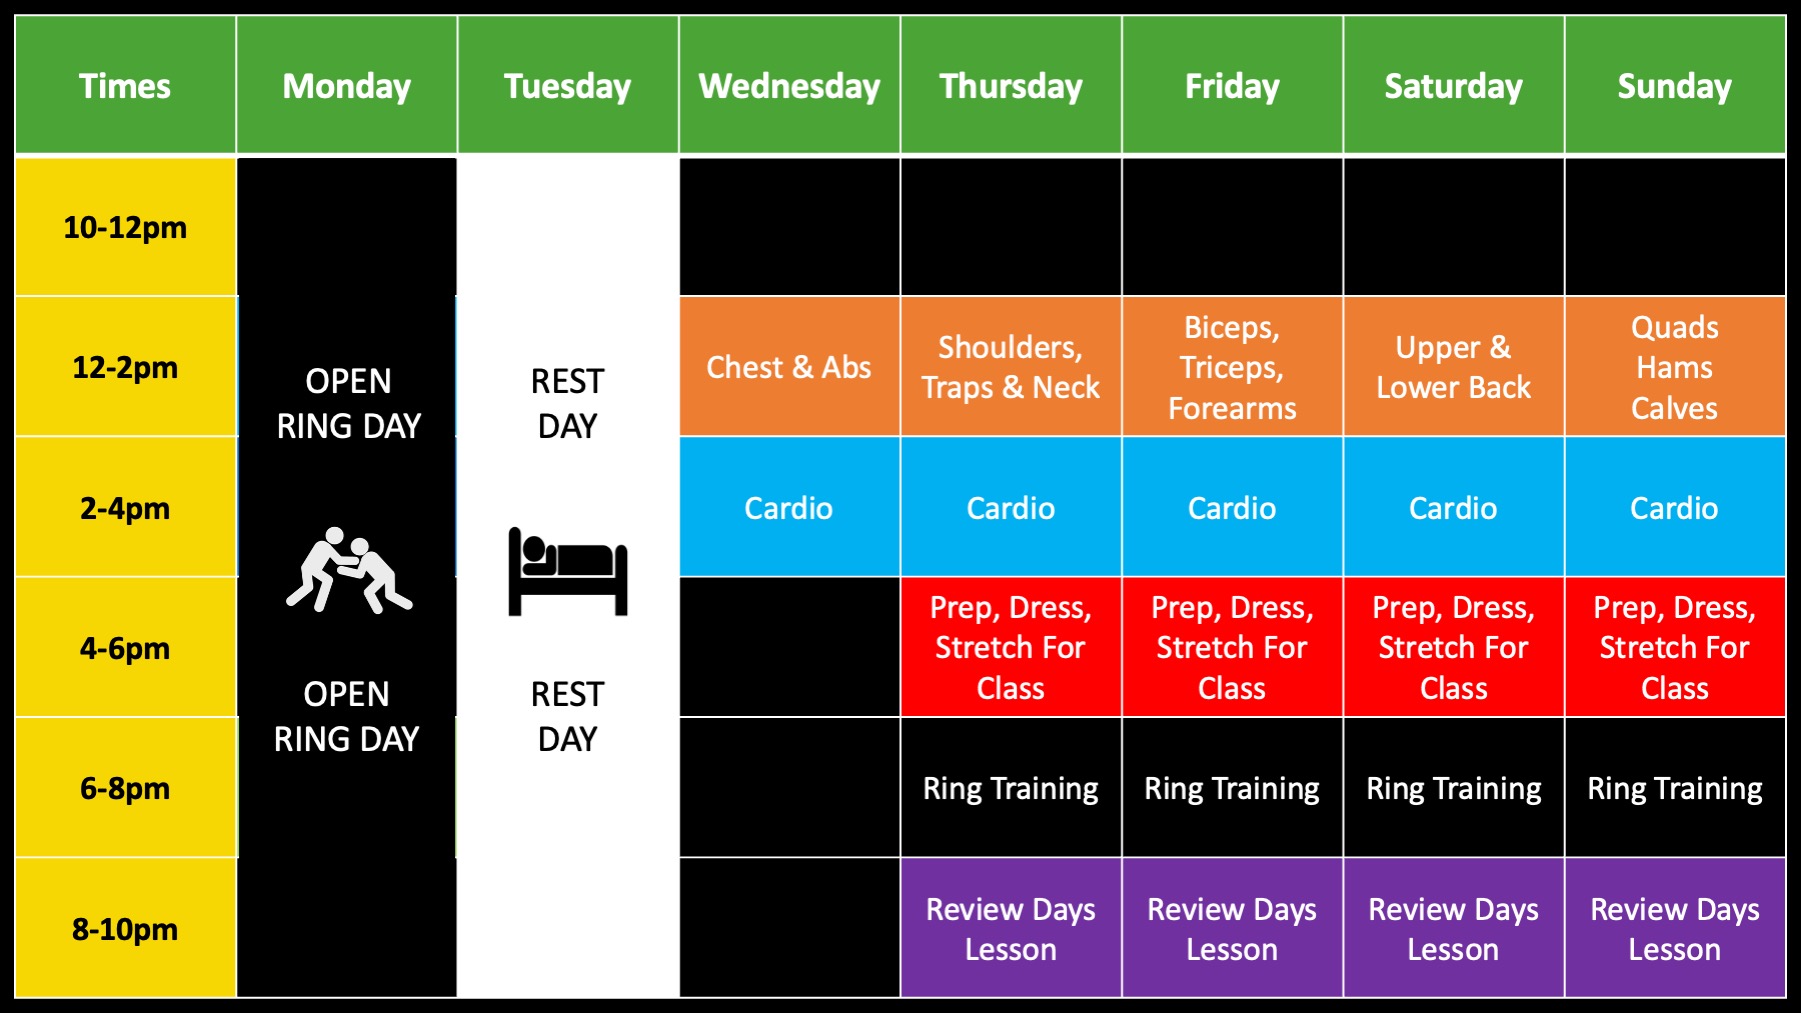 WFPC Gym and Training Calendar